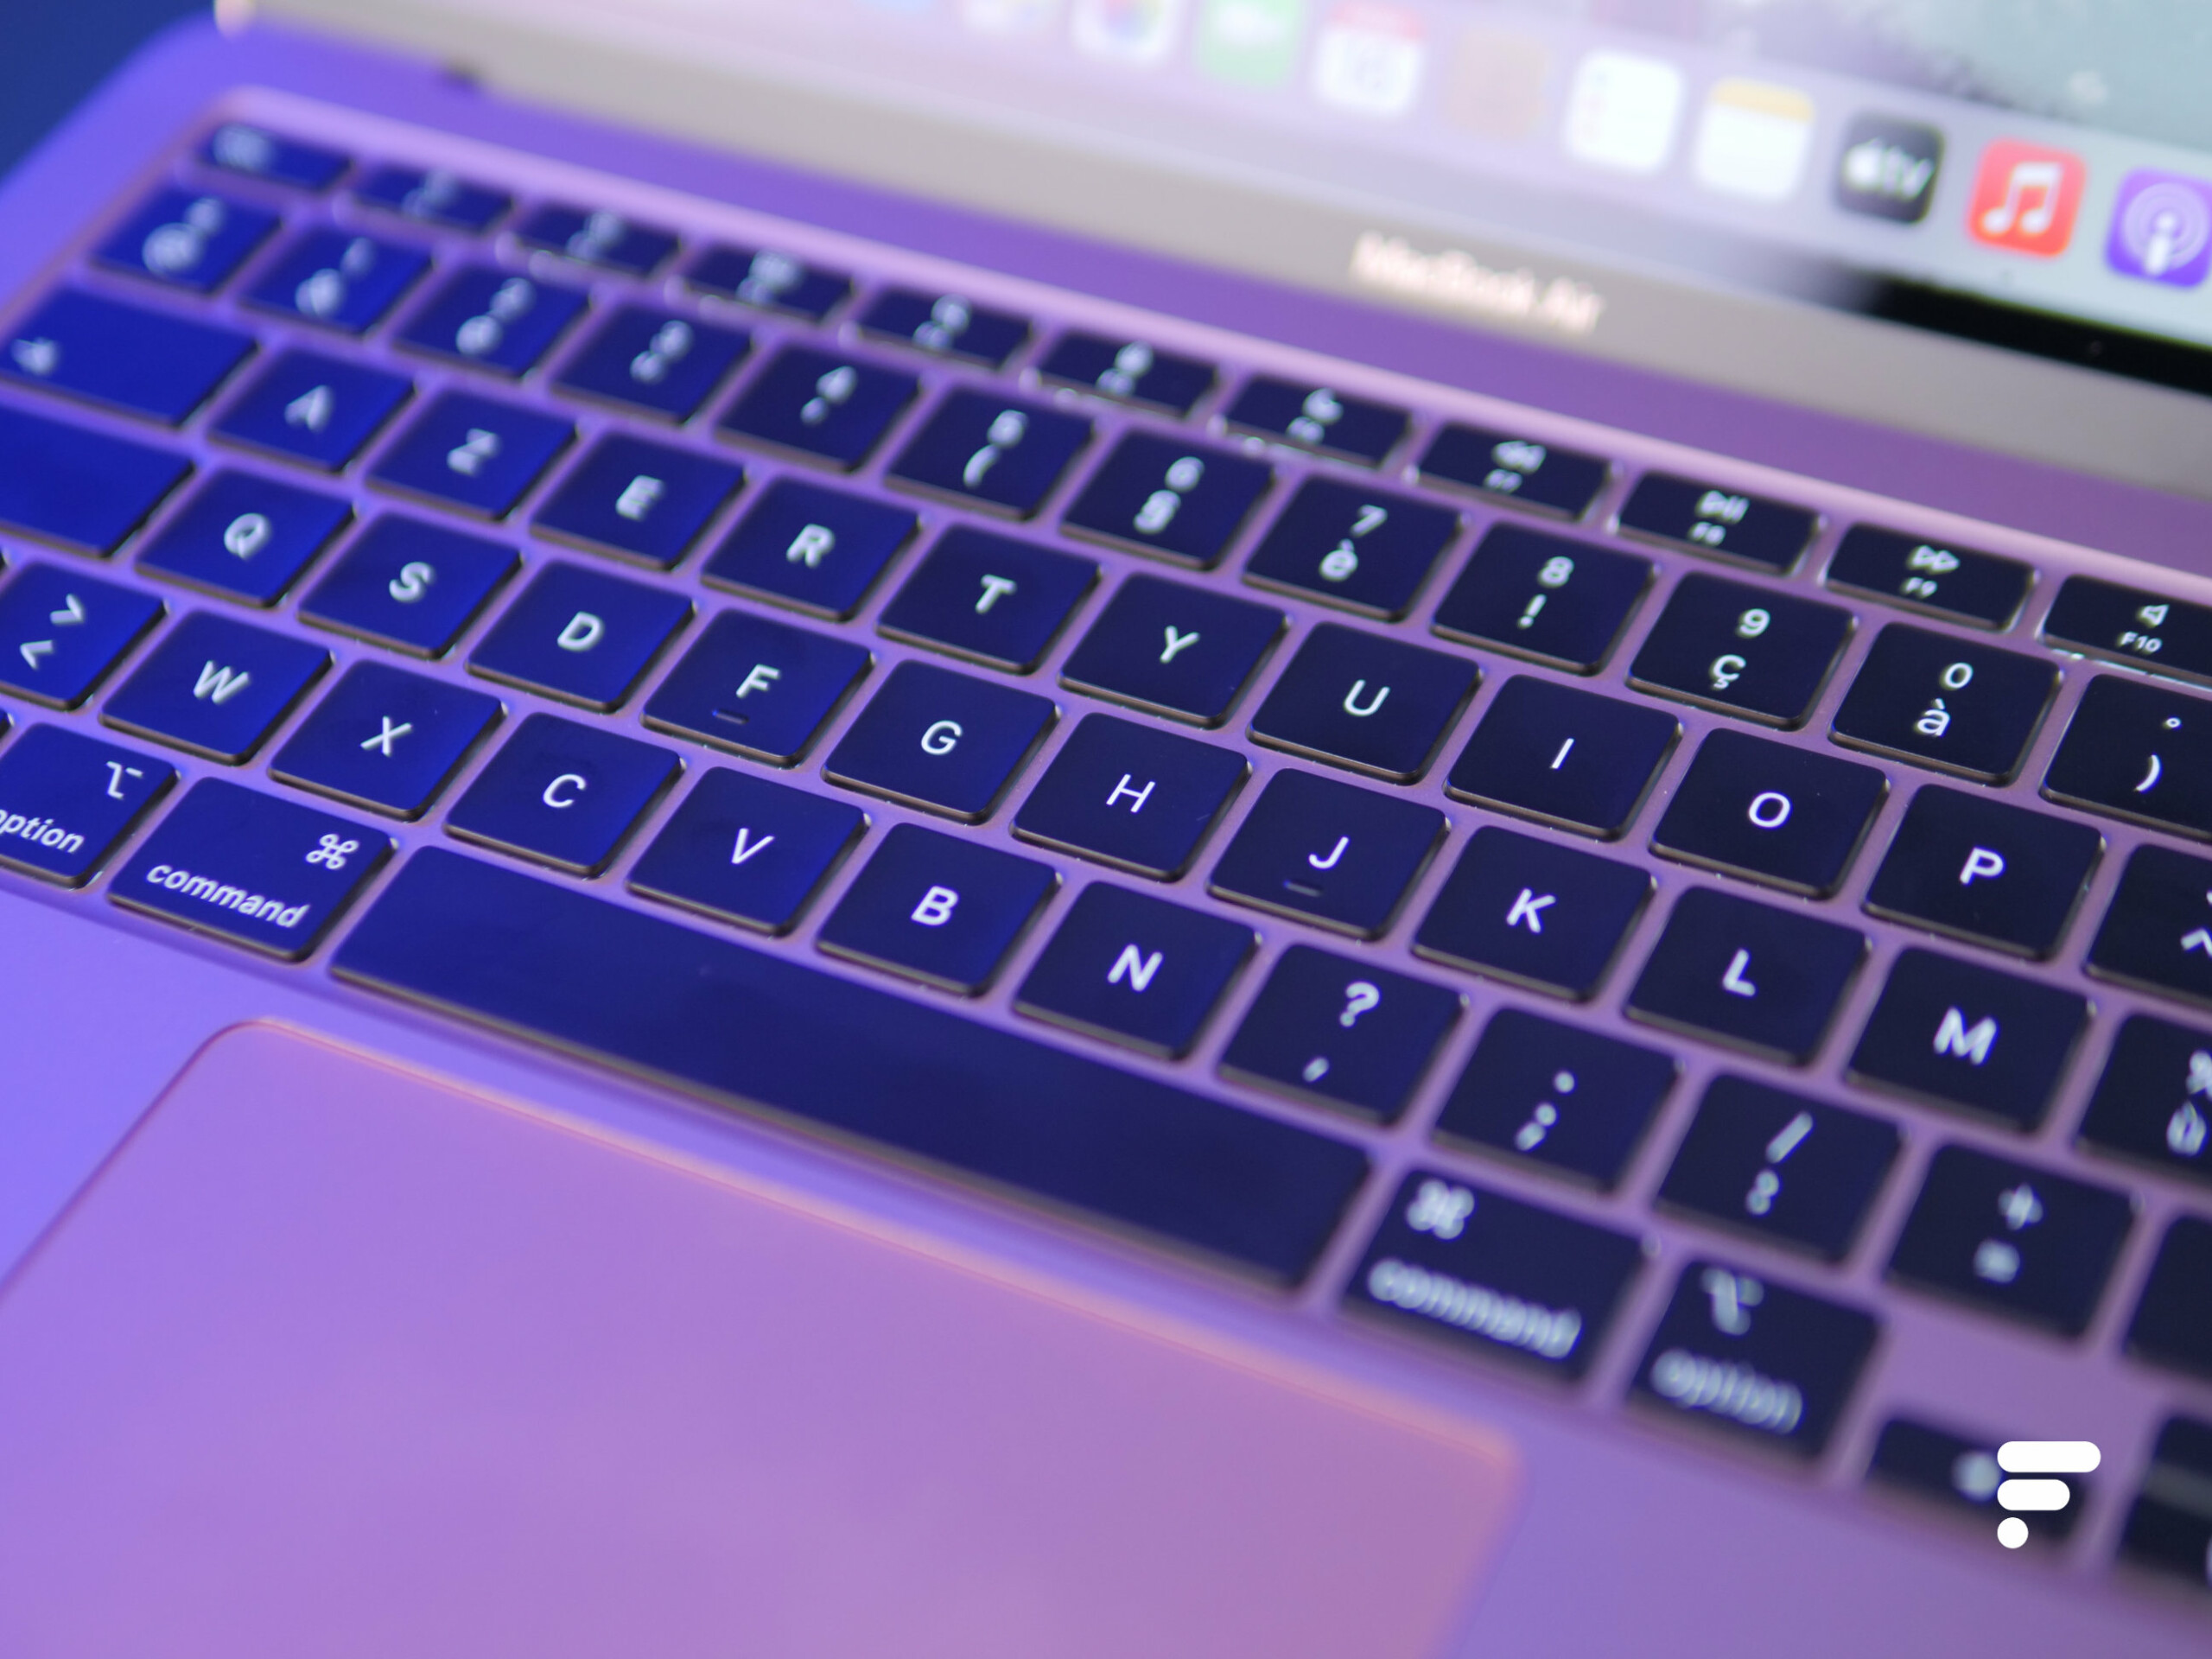 Soldes Apple : Le MacBook Air M1 passe sous la barre des 1000 € !